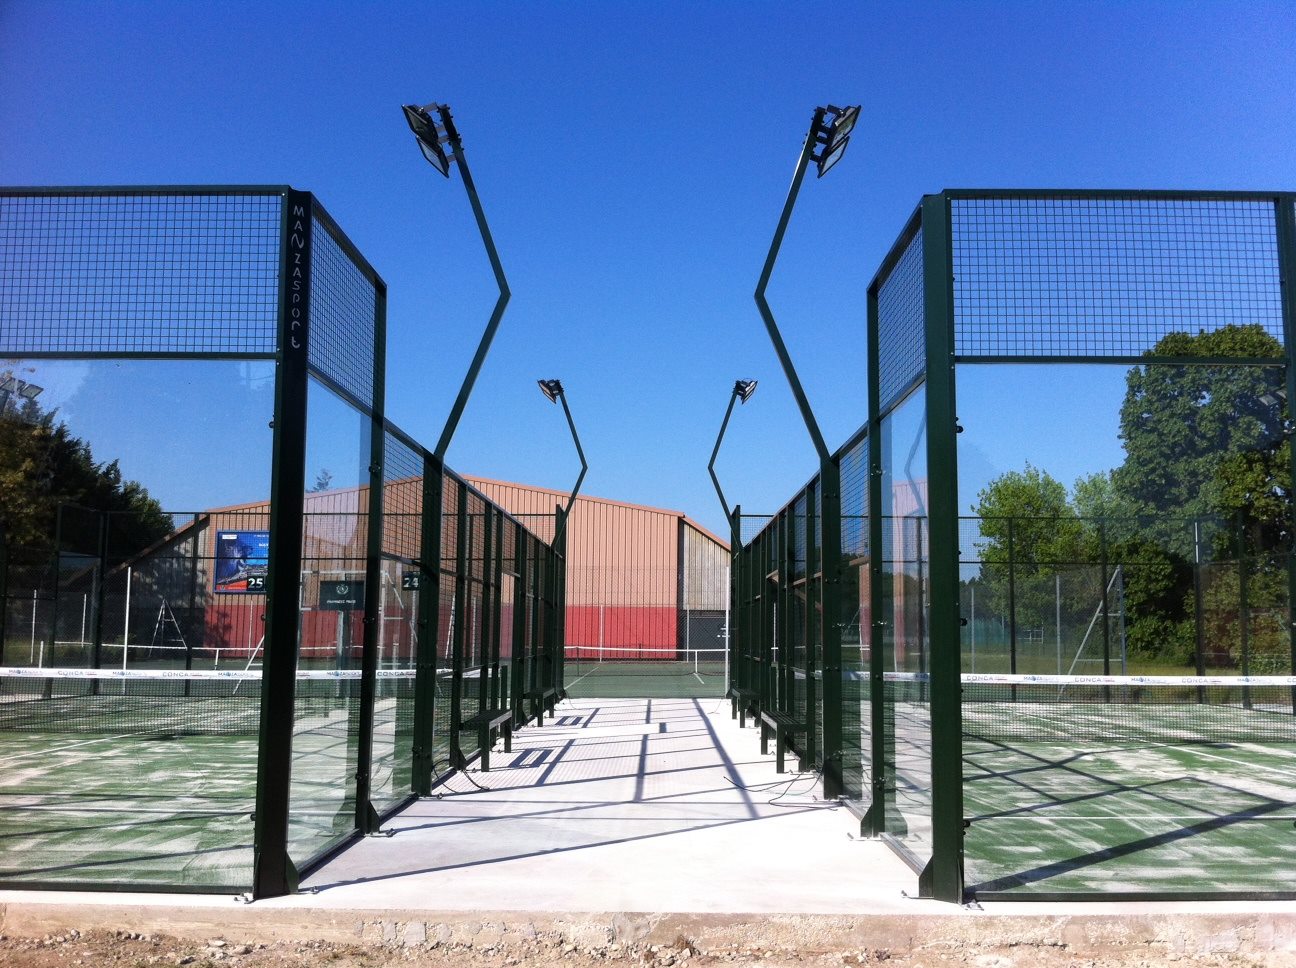 Tennis Club de Lyon网球俱乐部提供2板球场